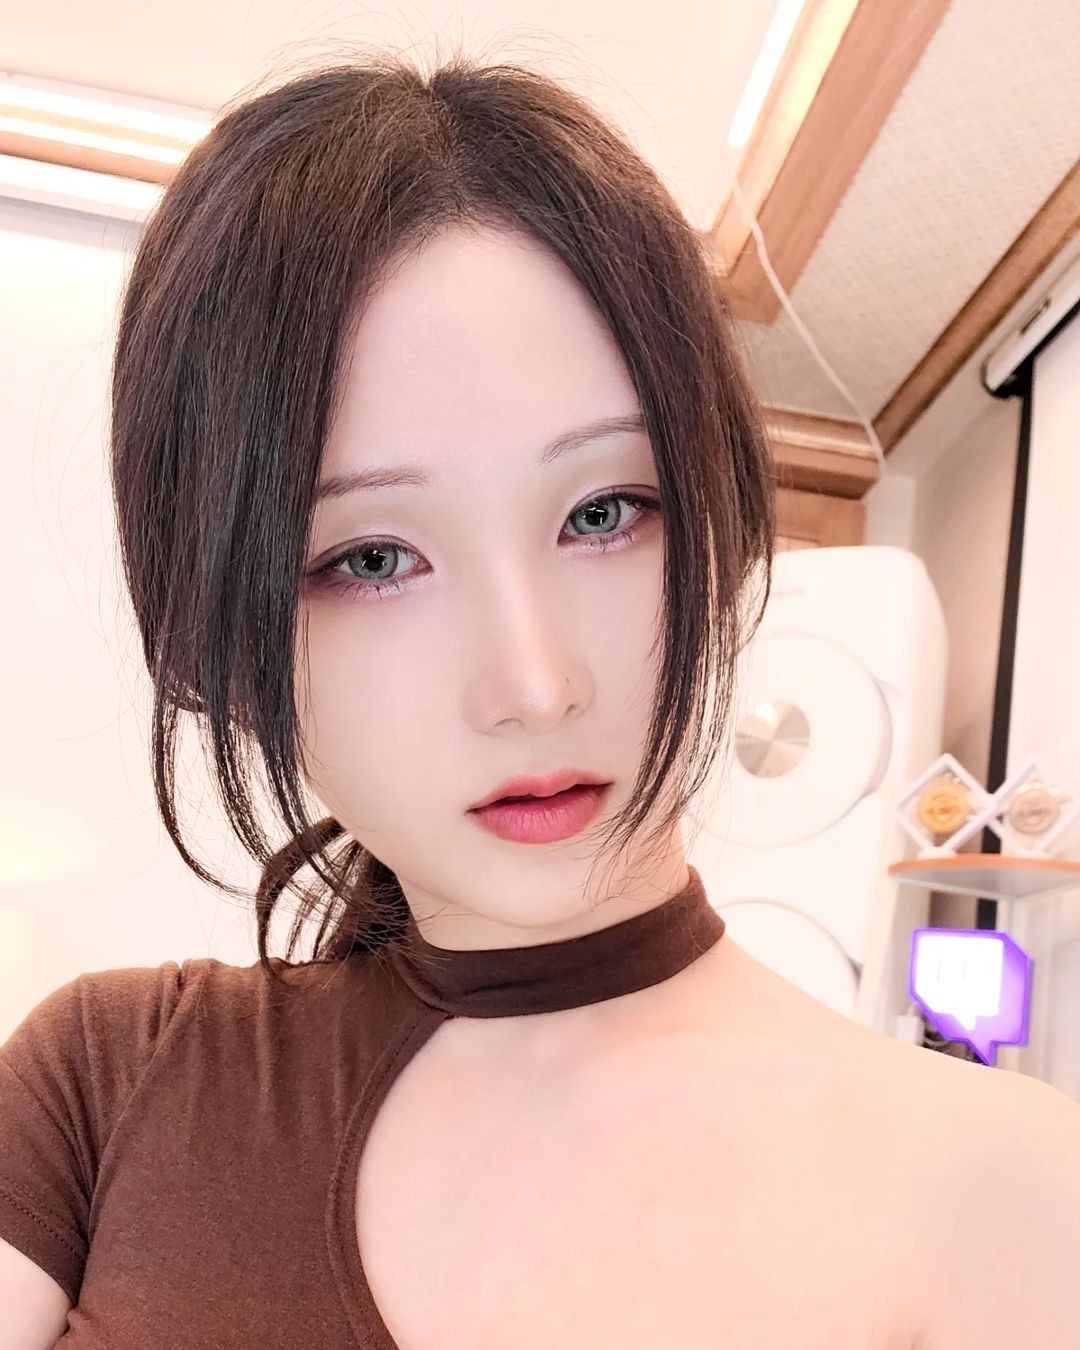 韩国美女模特MyBoo福利图赏 极致身材十分热辣